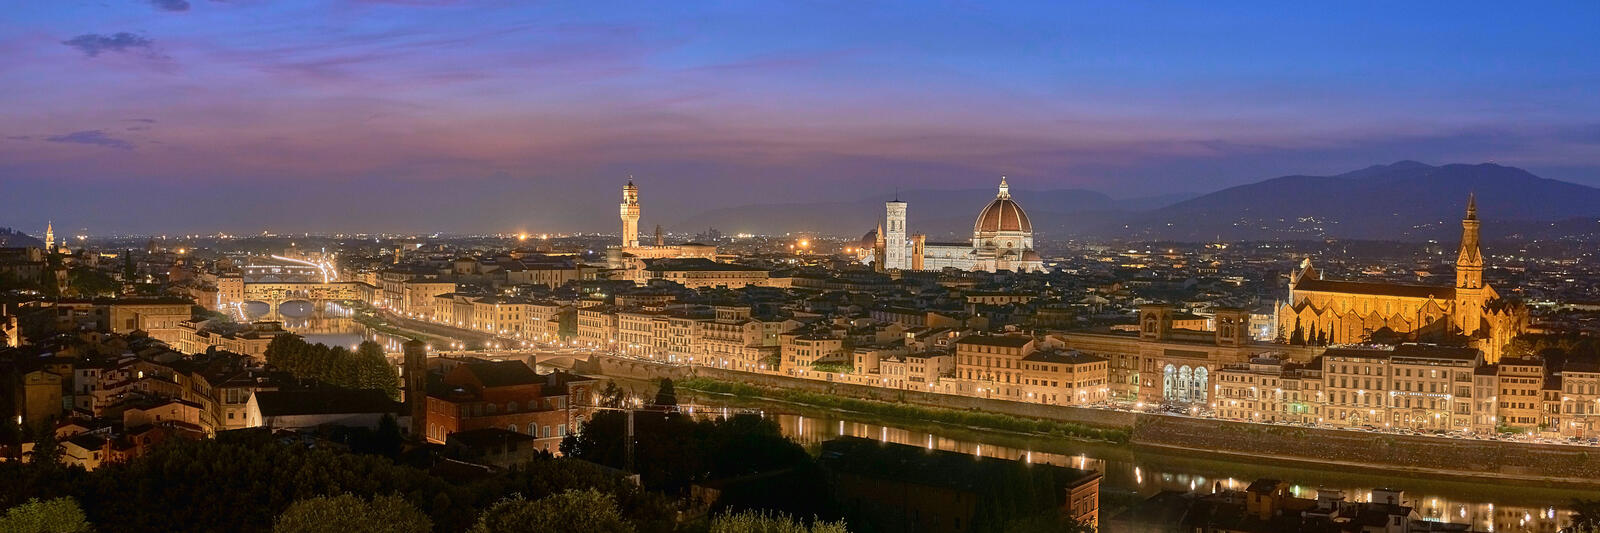 Обои Италия Флоренция ночной город на рабочий стол